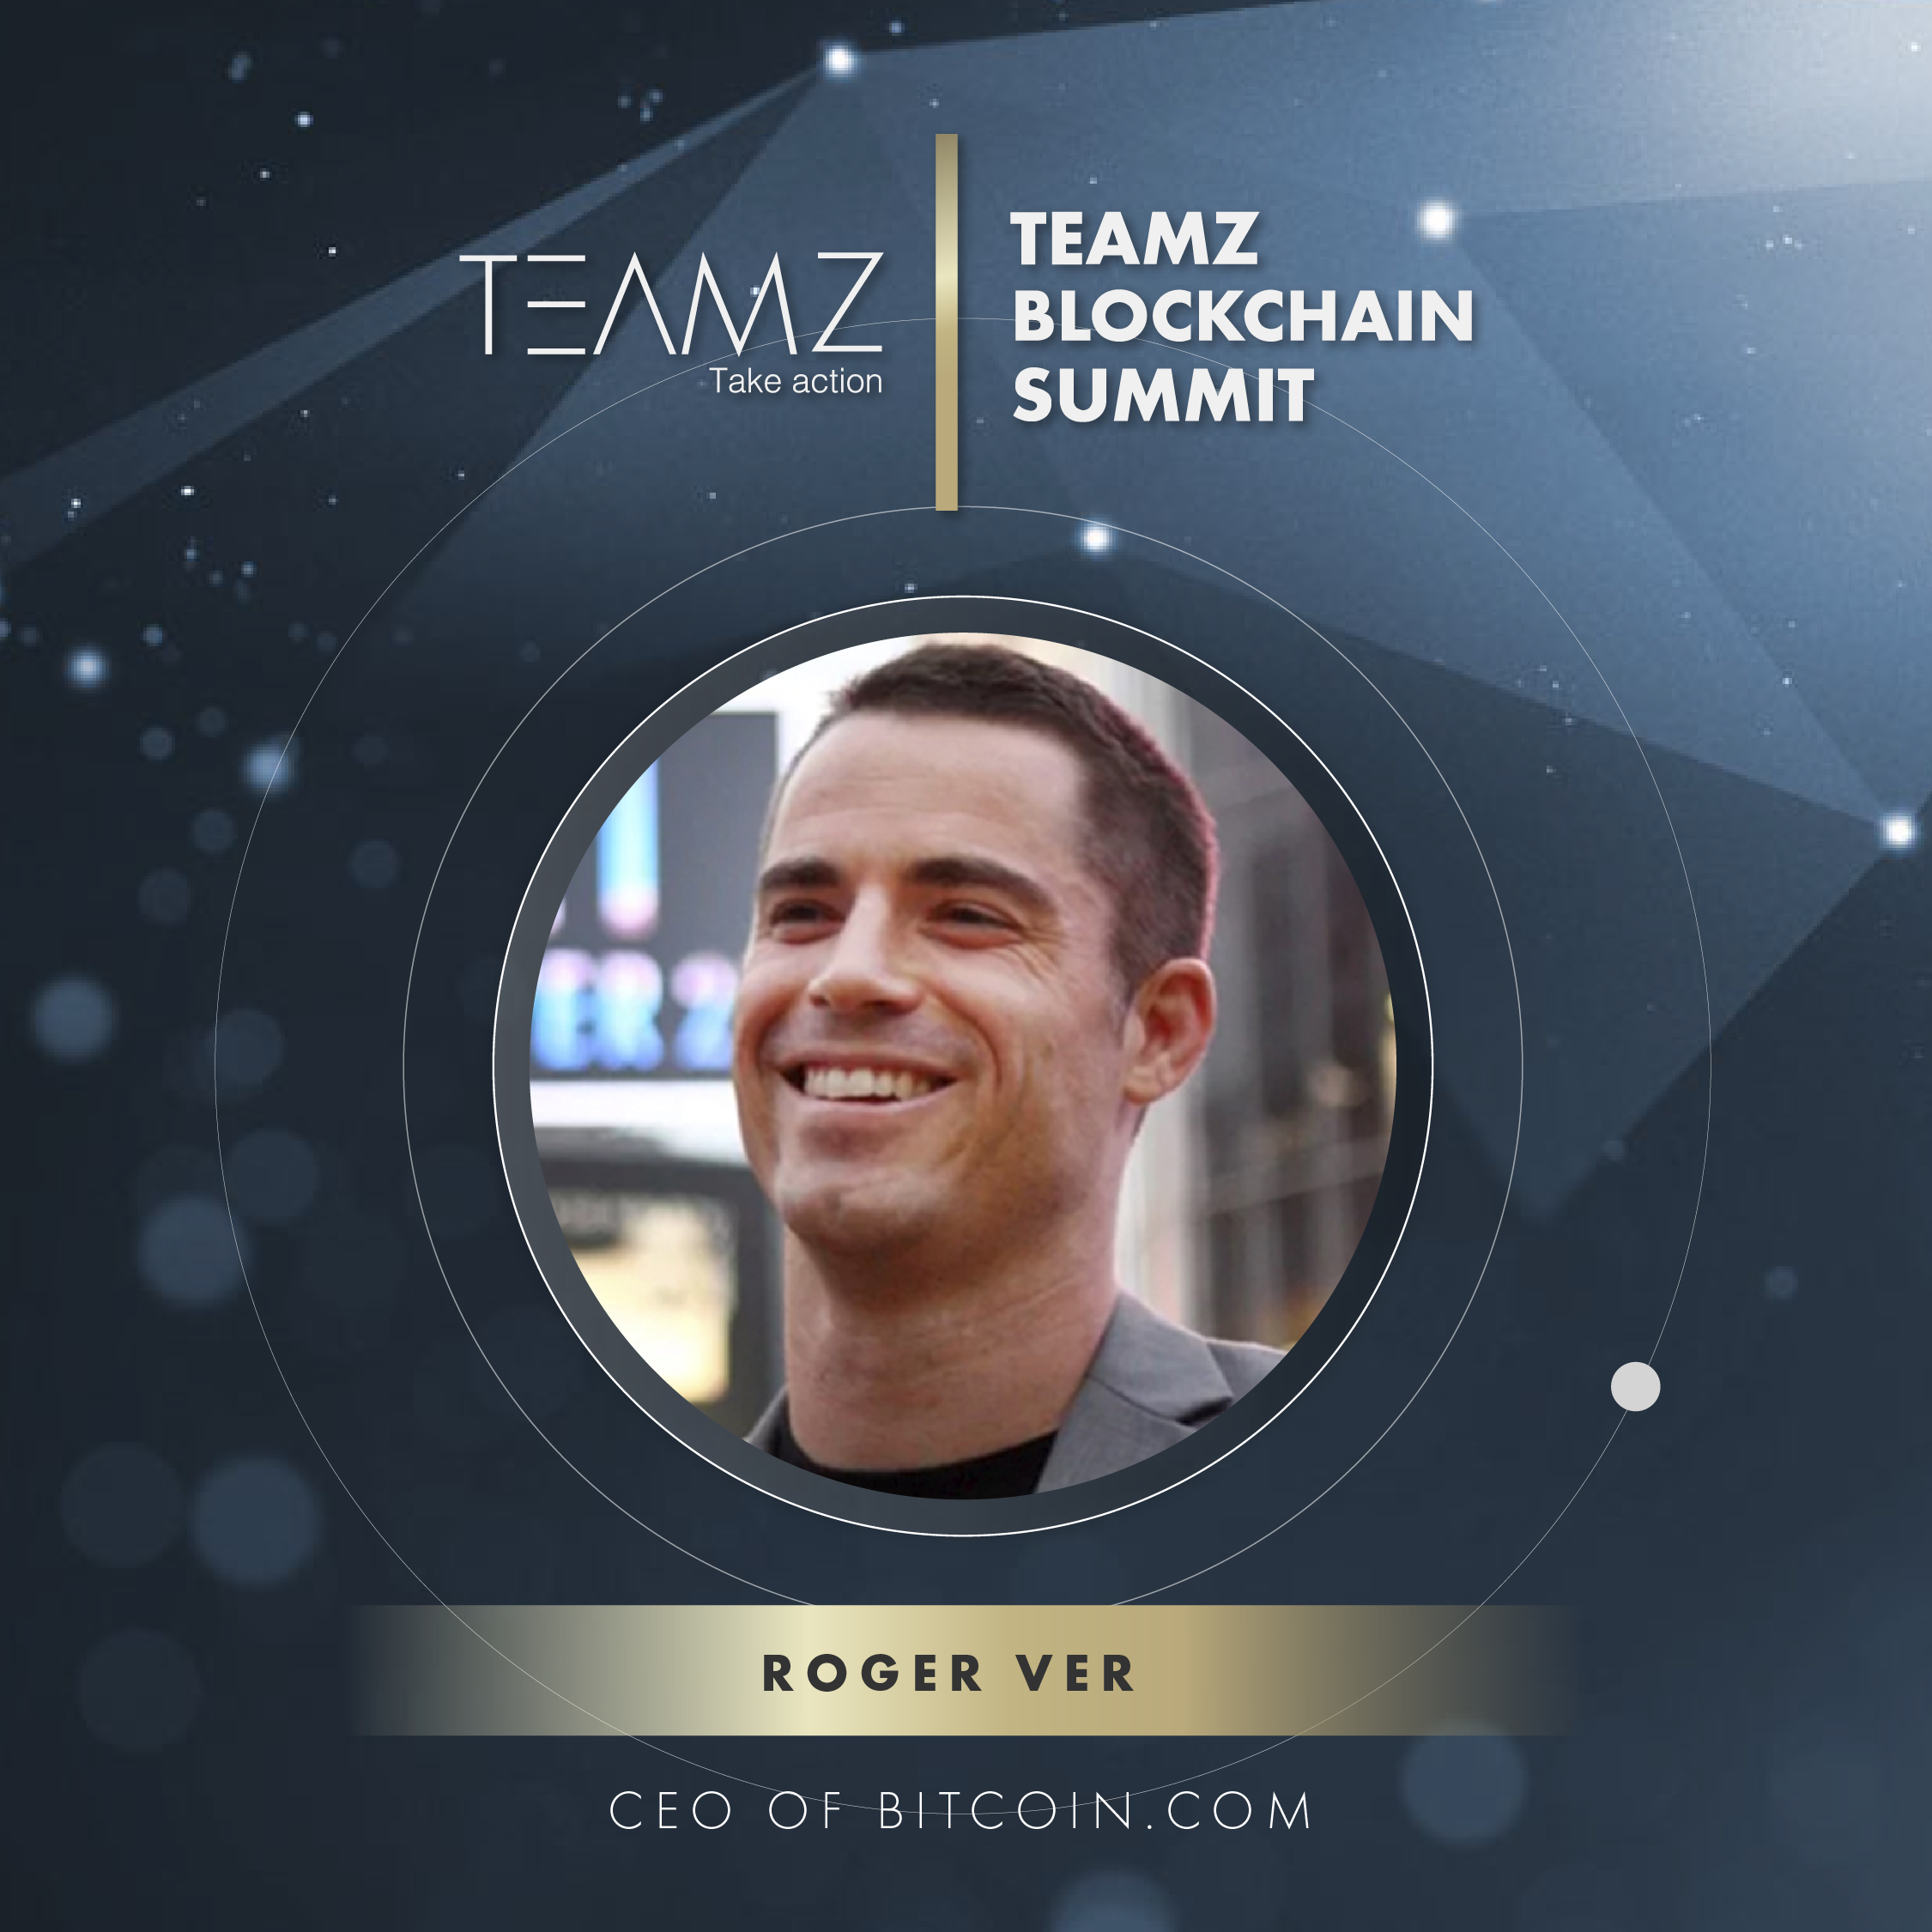 teamz blockchain summit